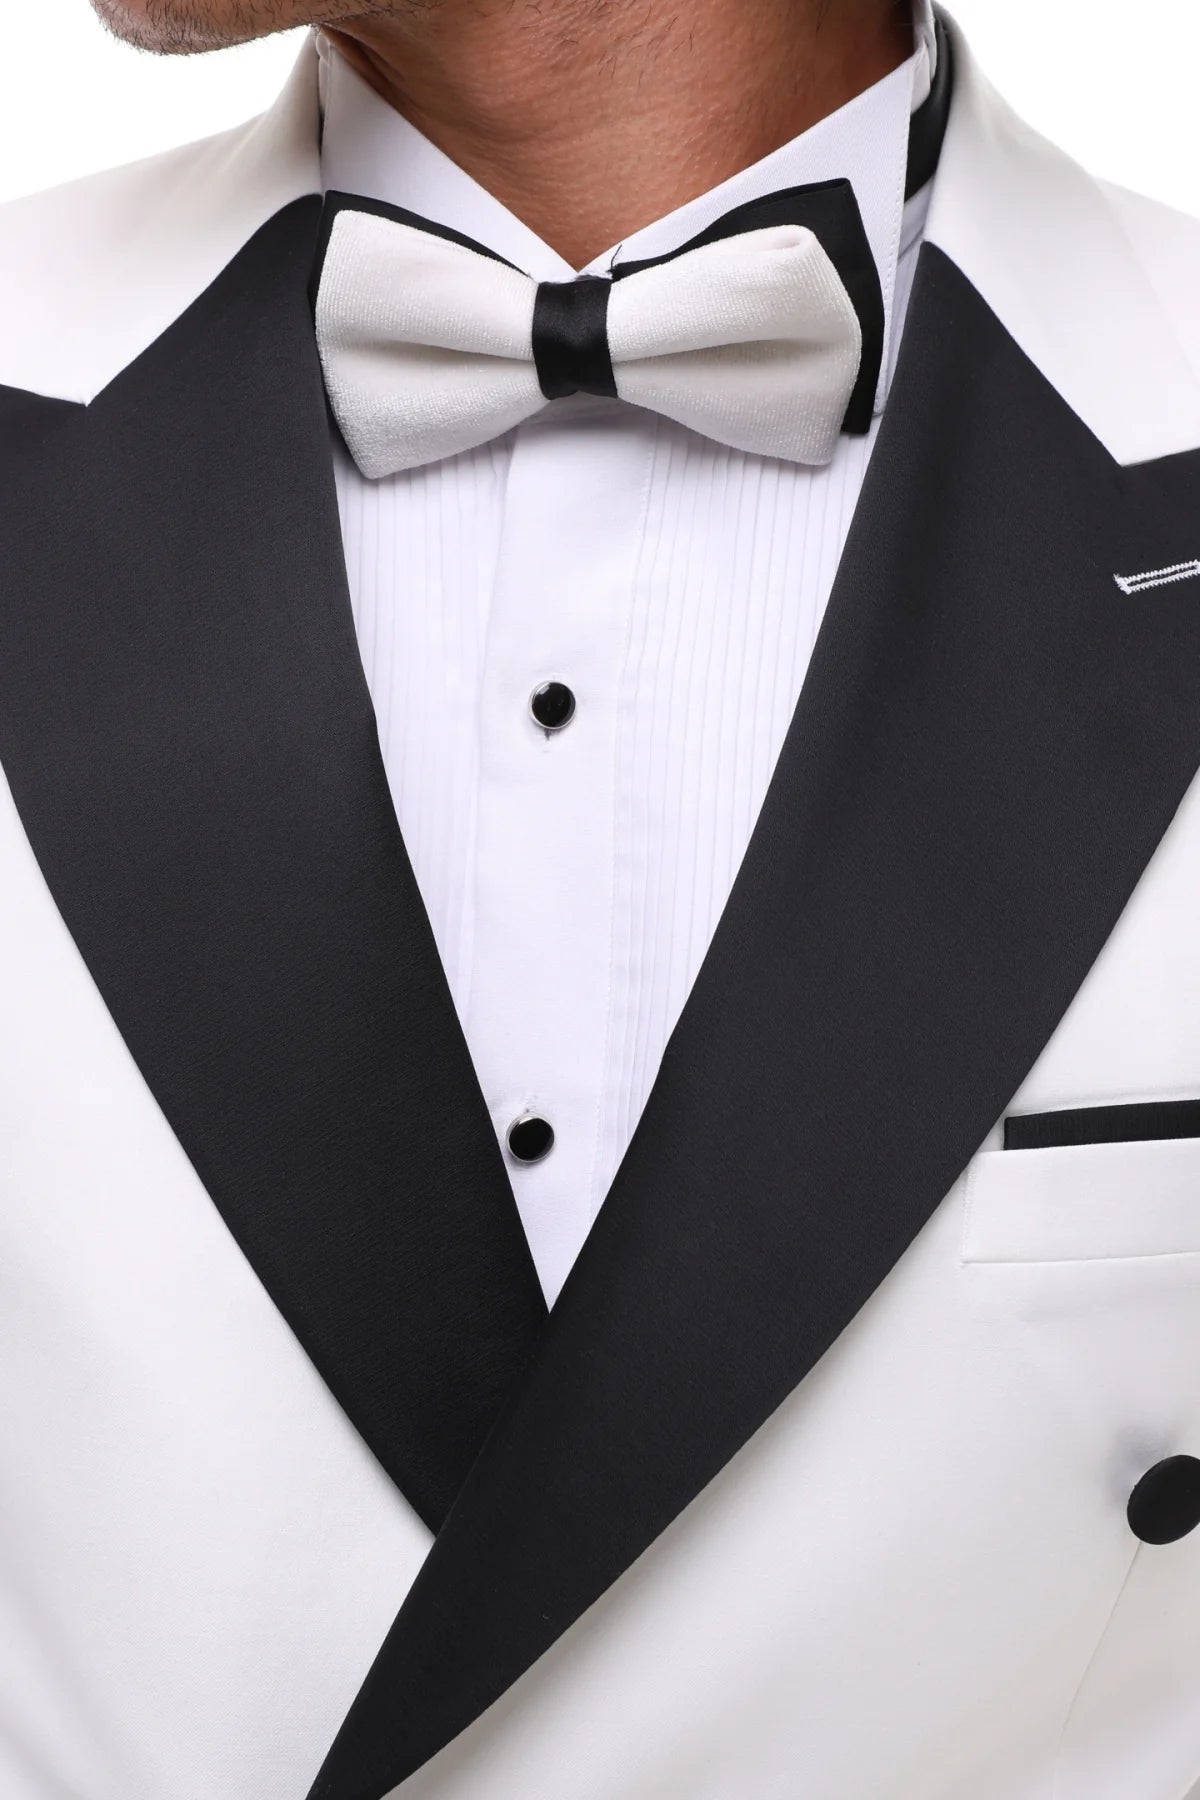 Double Breasted White & Black Satin Tuxedo